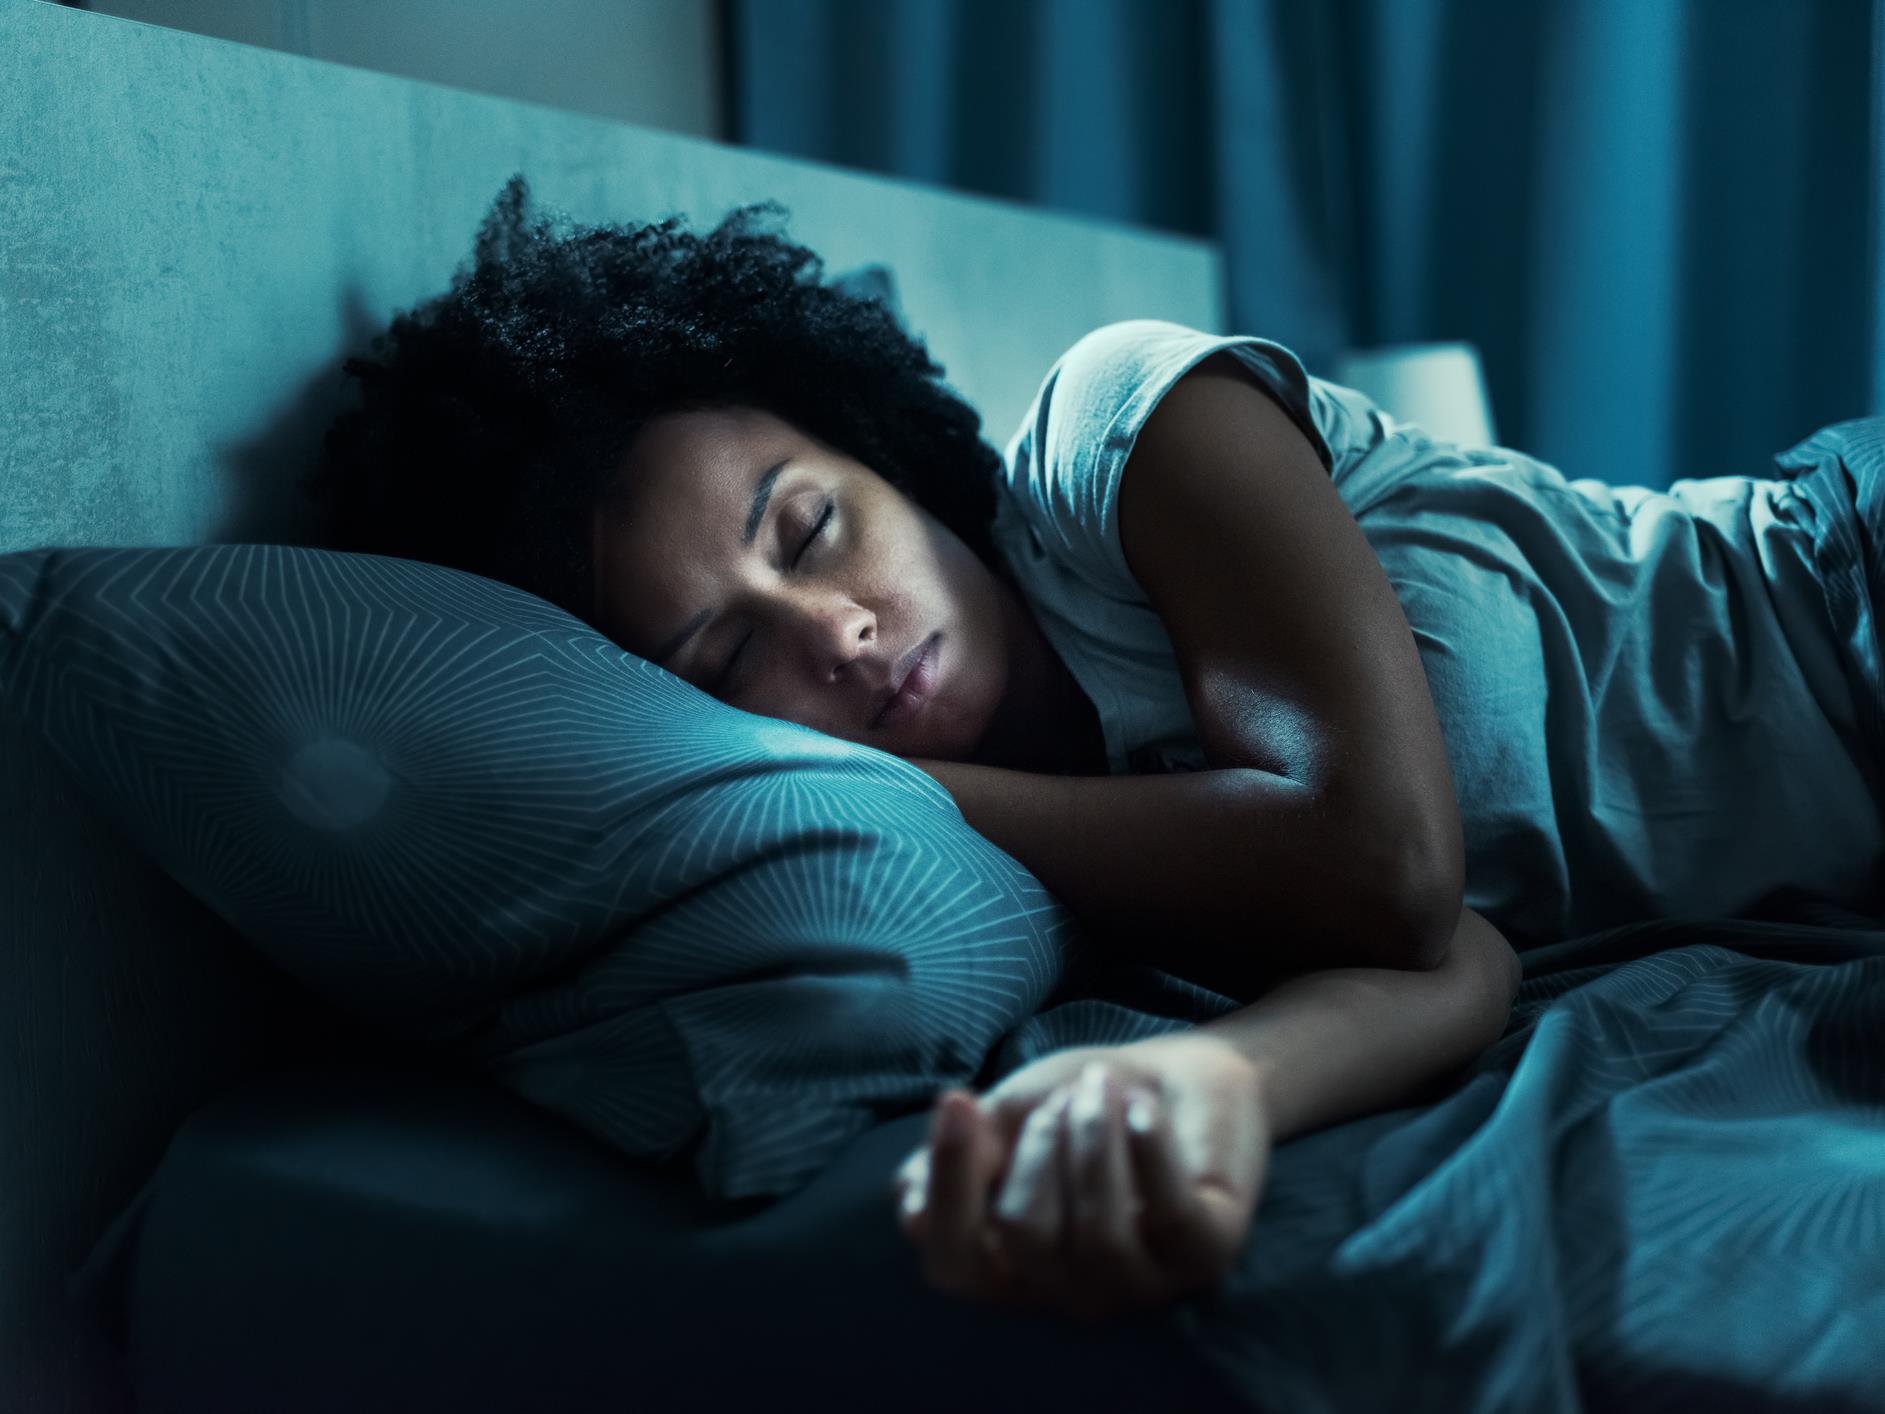 Le risque de démence lié à la diminution du sommeil lent, selon une étude